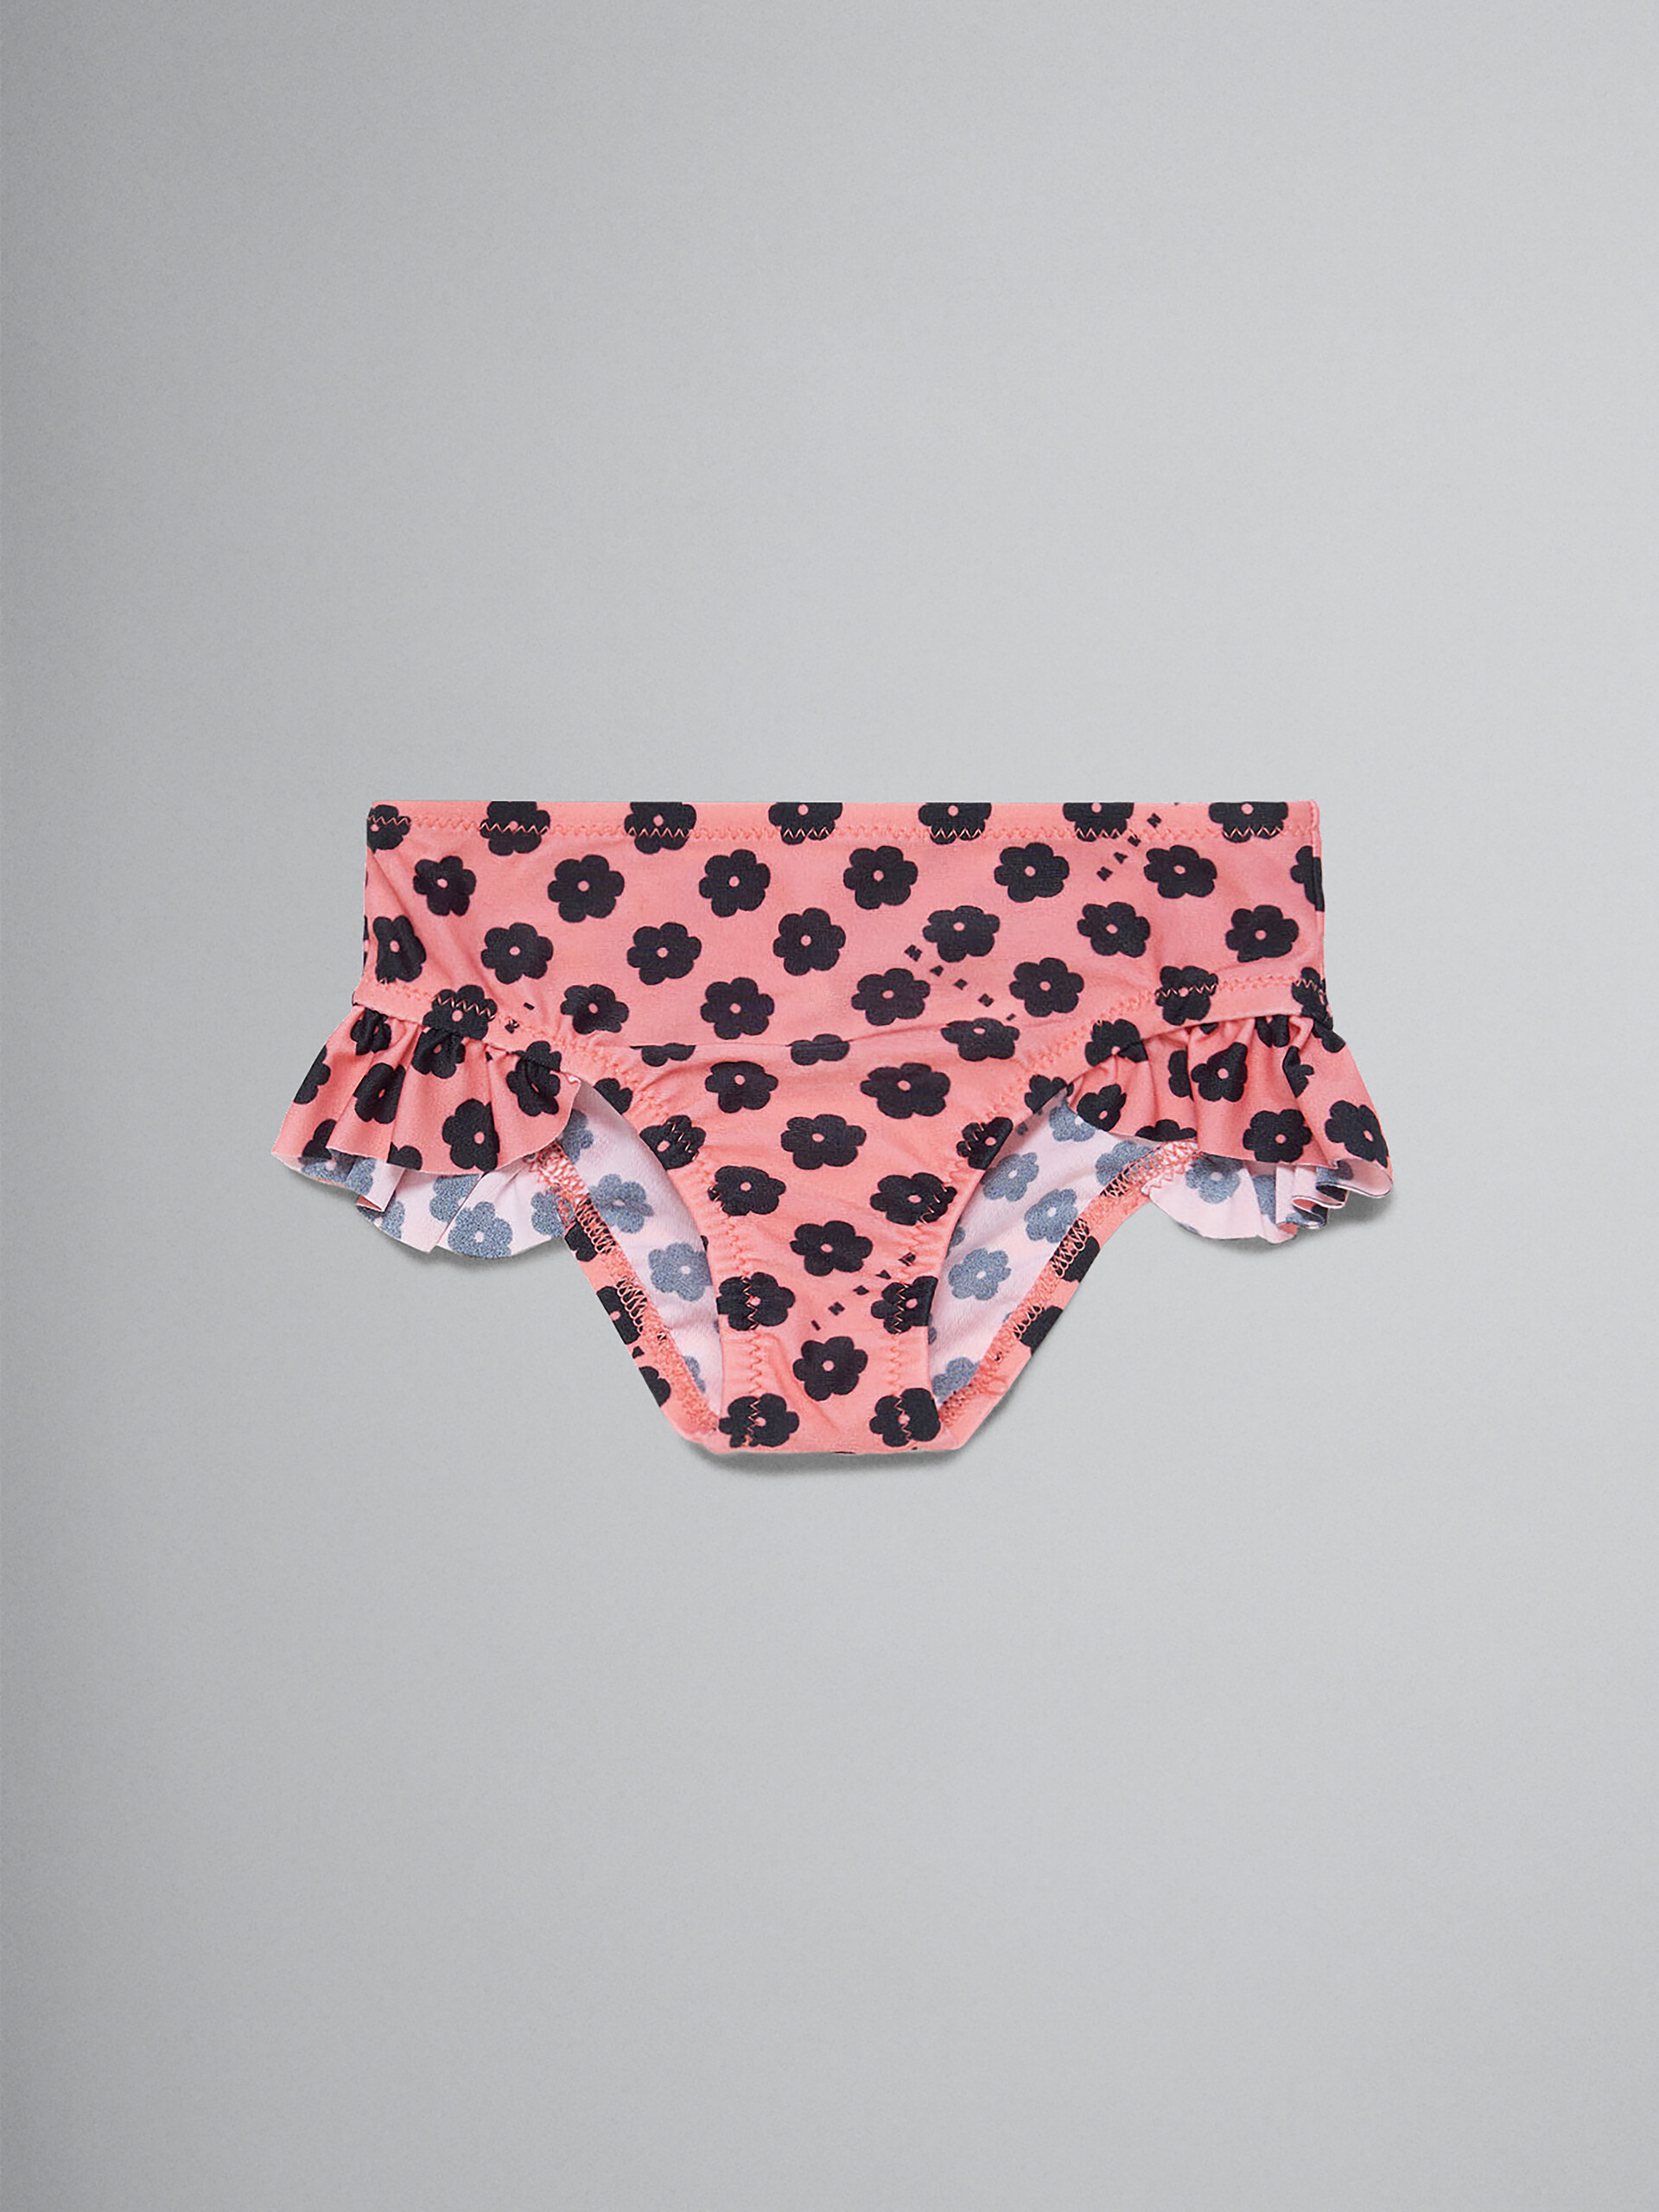 Bas de bikini rose à motif floral - Maillots de bain - Image 1